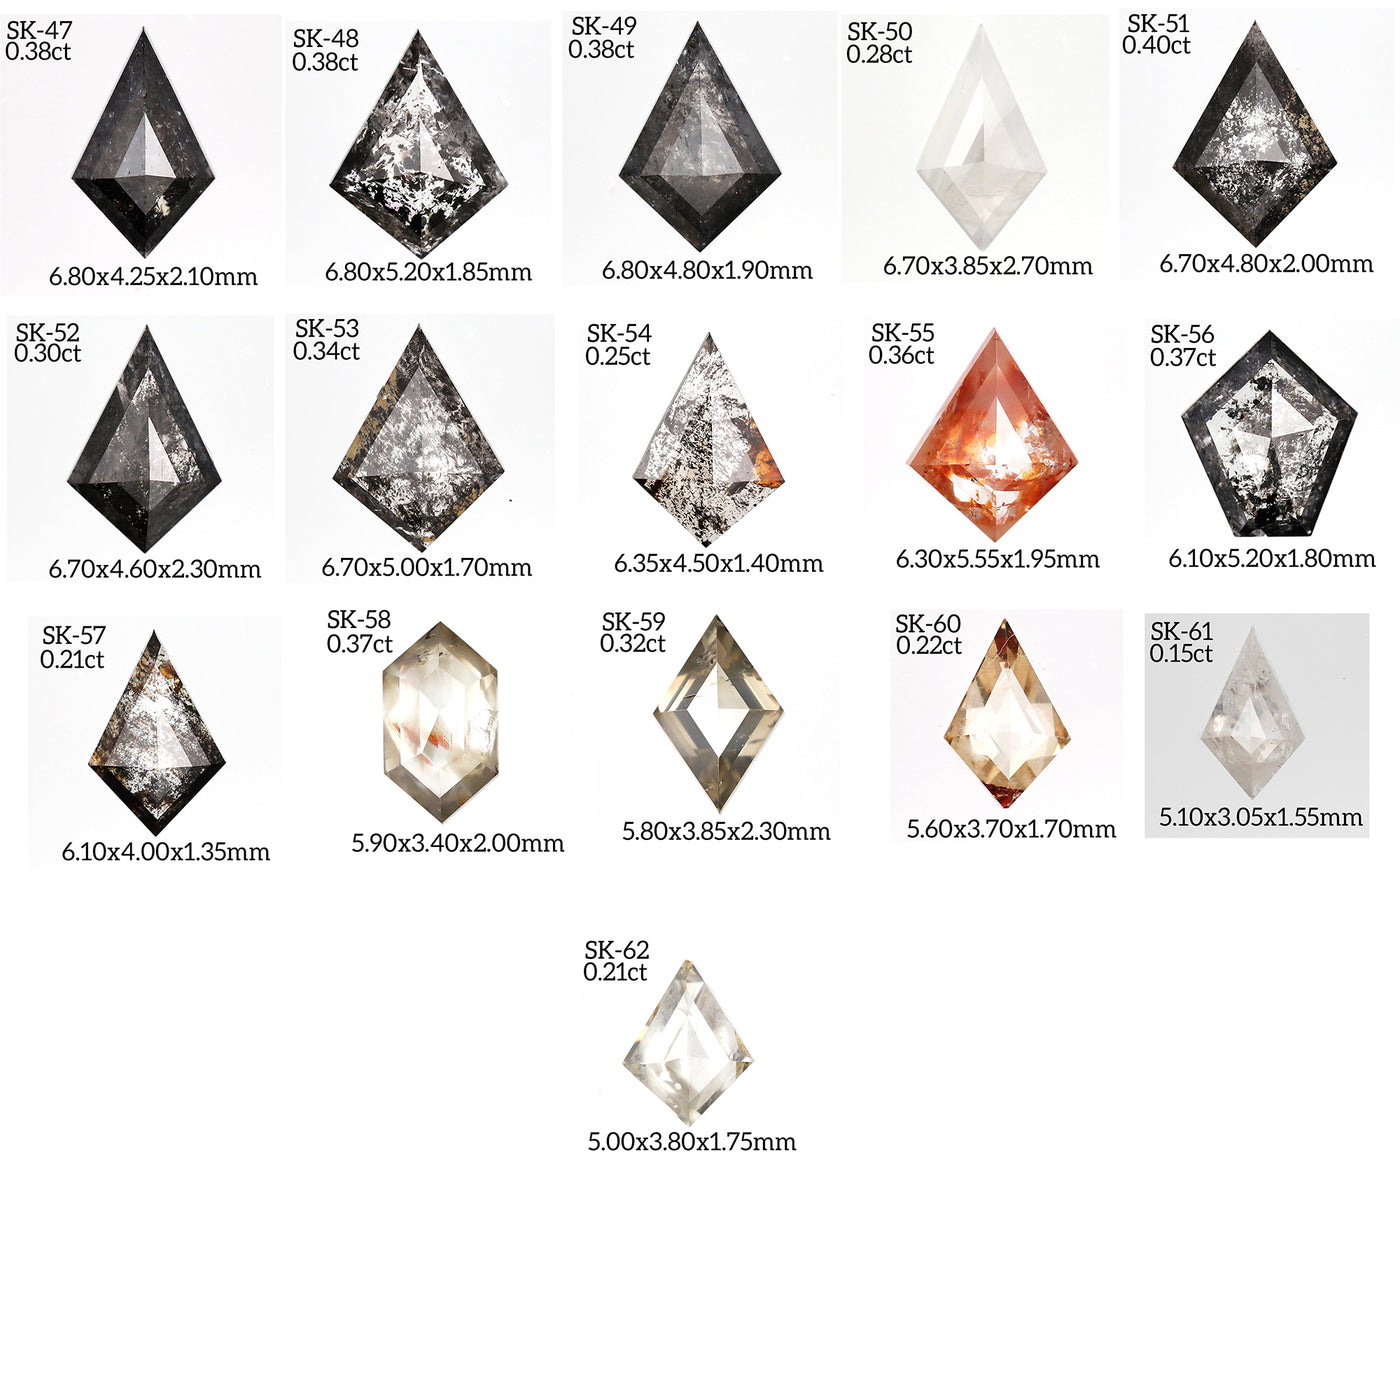 SK52 - Salt and pepper kite diamond